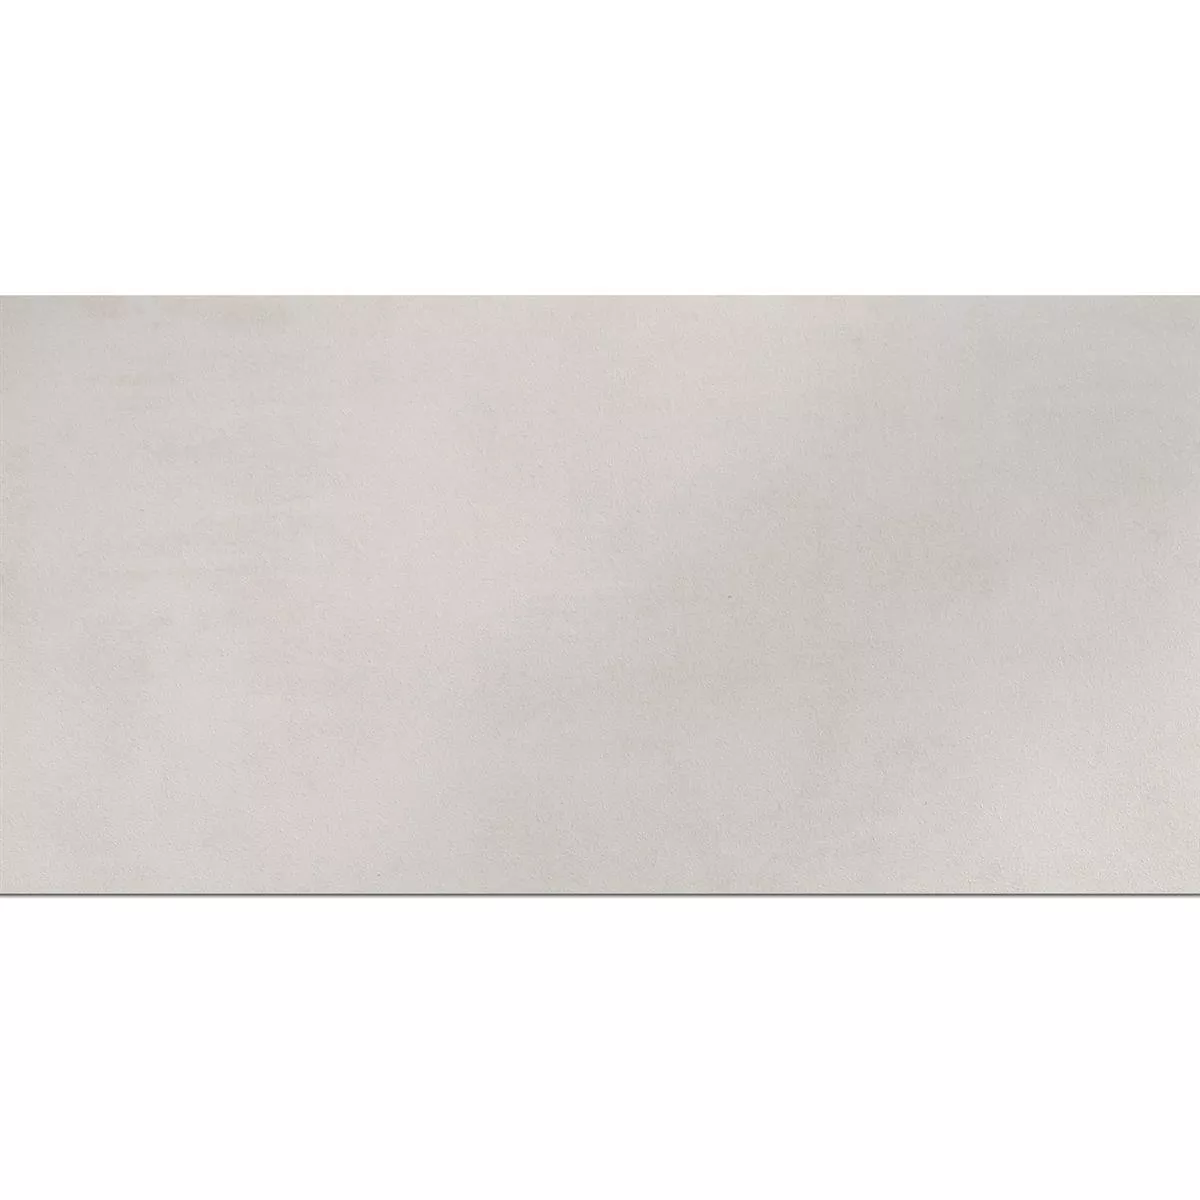 Terrassenplatten Zeus Betonoptik White 30x60cm